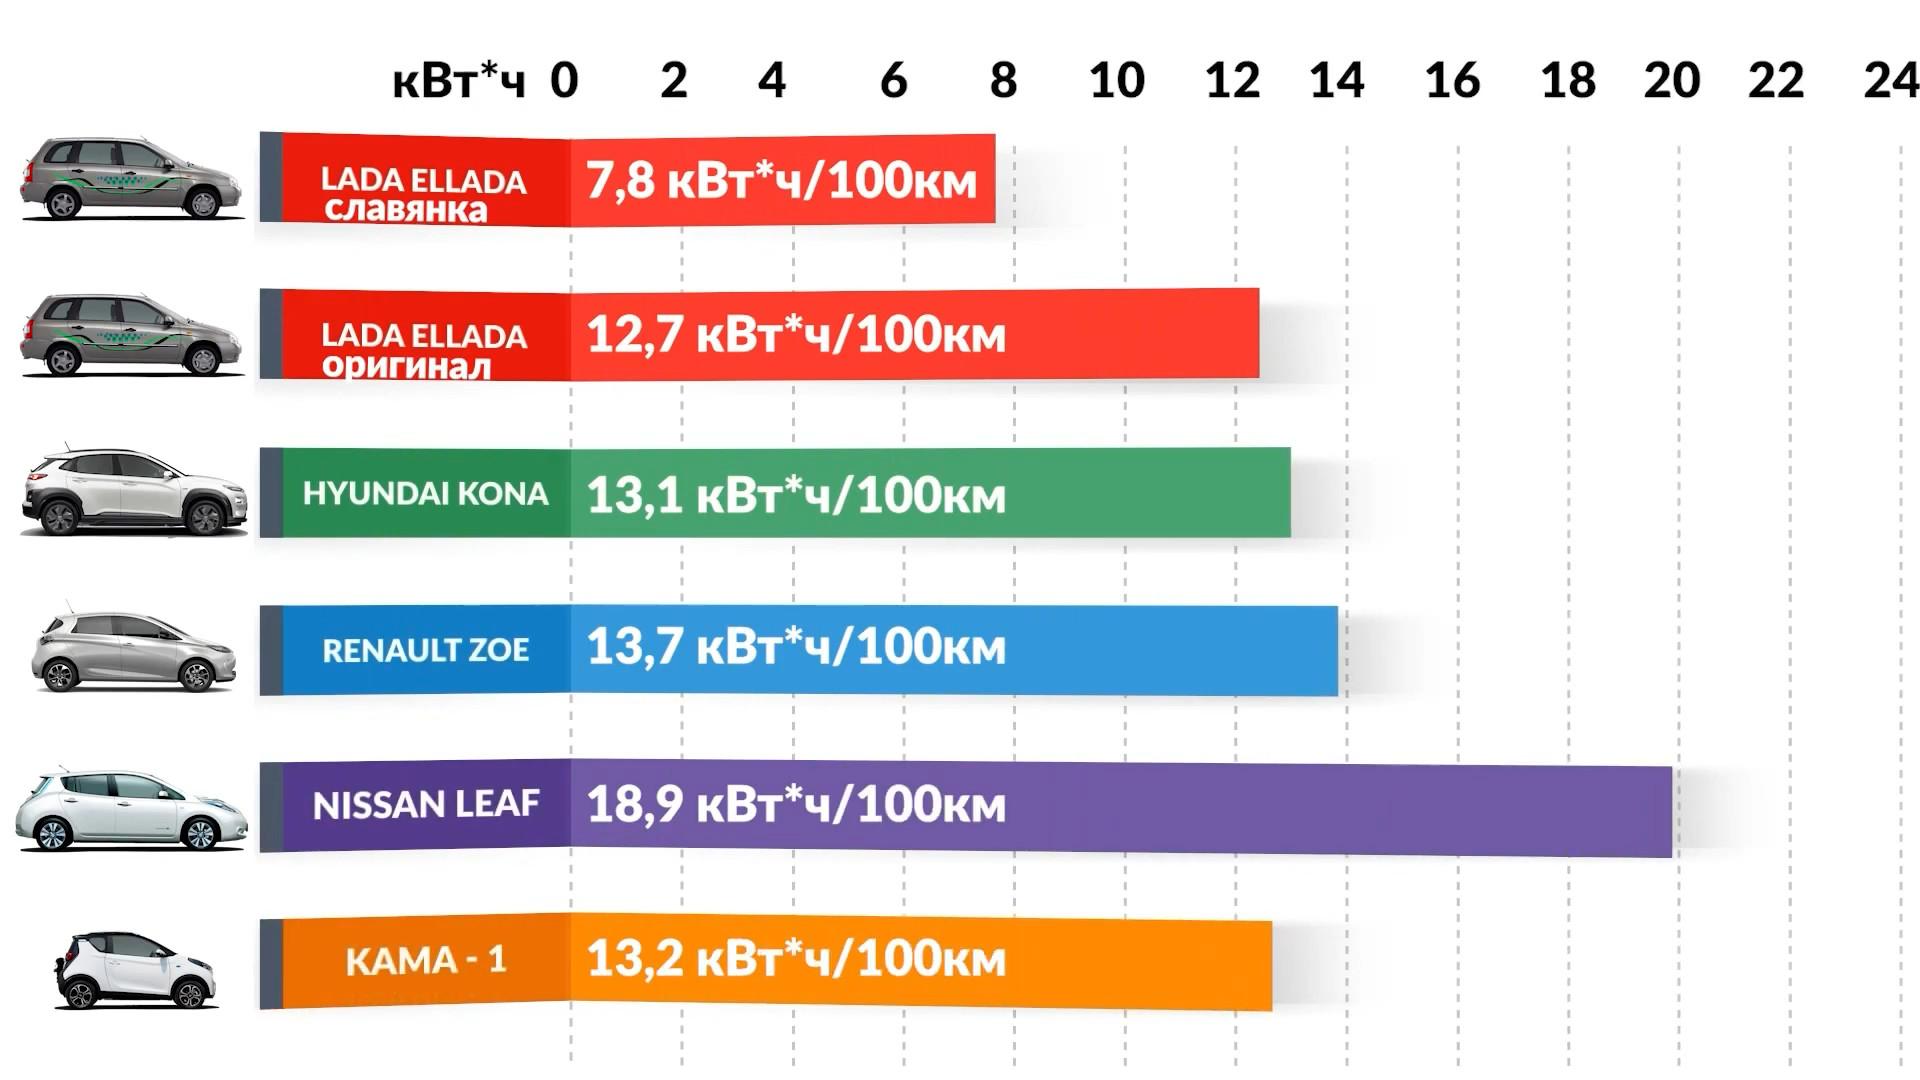 Приблизительное сравнение энергопотребления LADA Ellada со Славянкой, LADA Ellada с оригинальным мотором, Hyundai Kona, Renault Zoe, Nissan Leaf, Kama-1